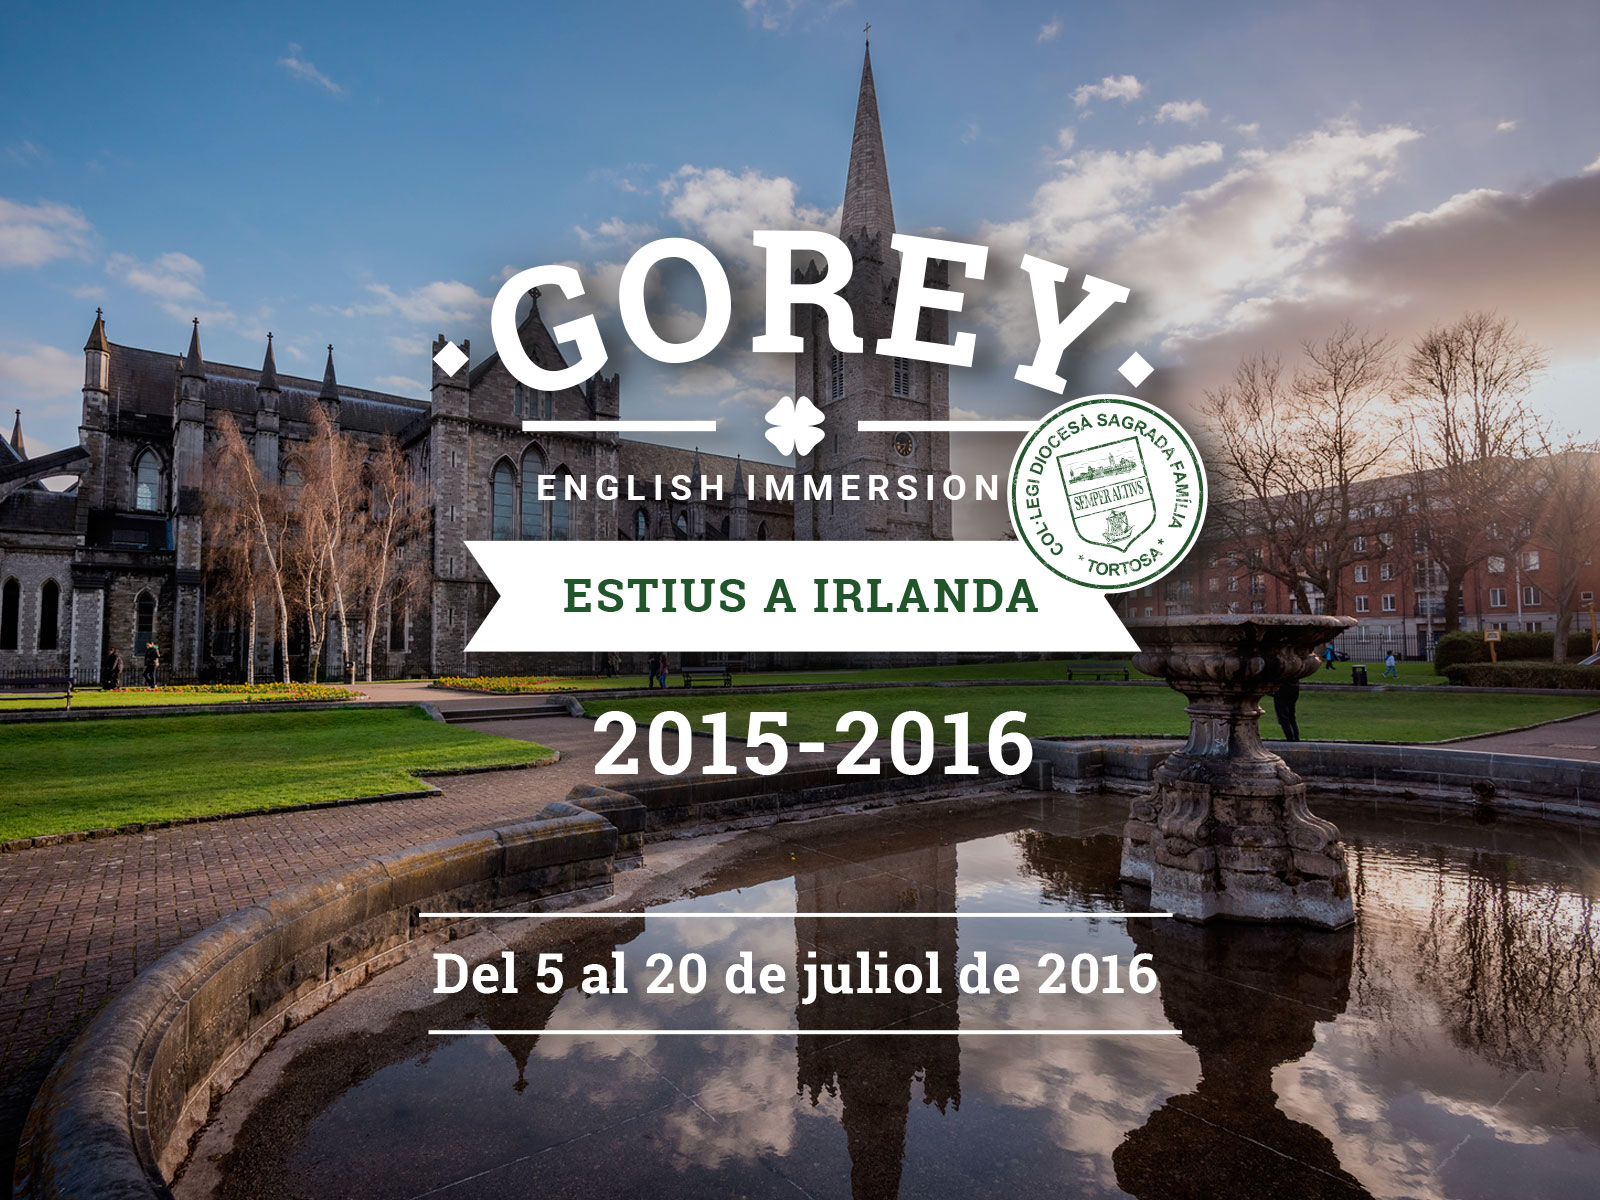 Gorey, estius a Irlanda